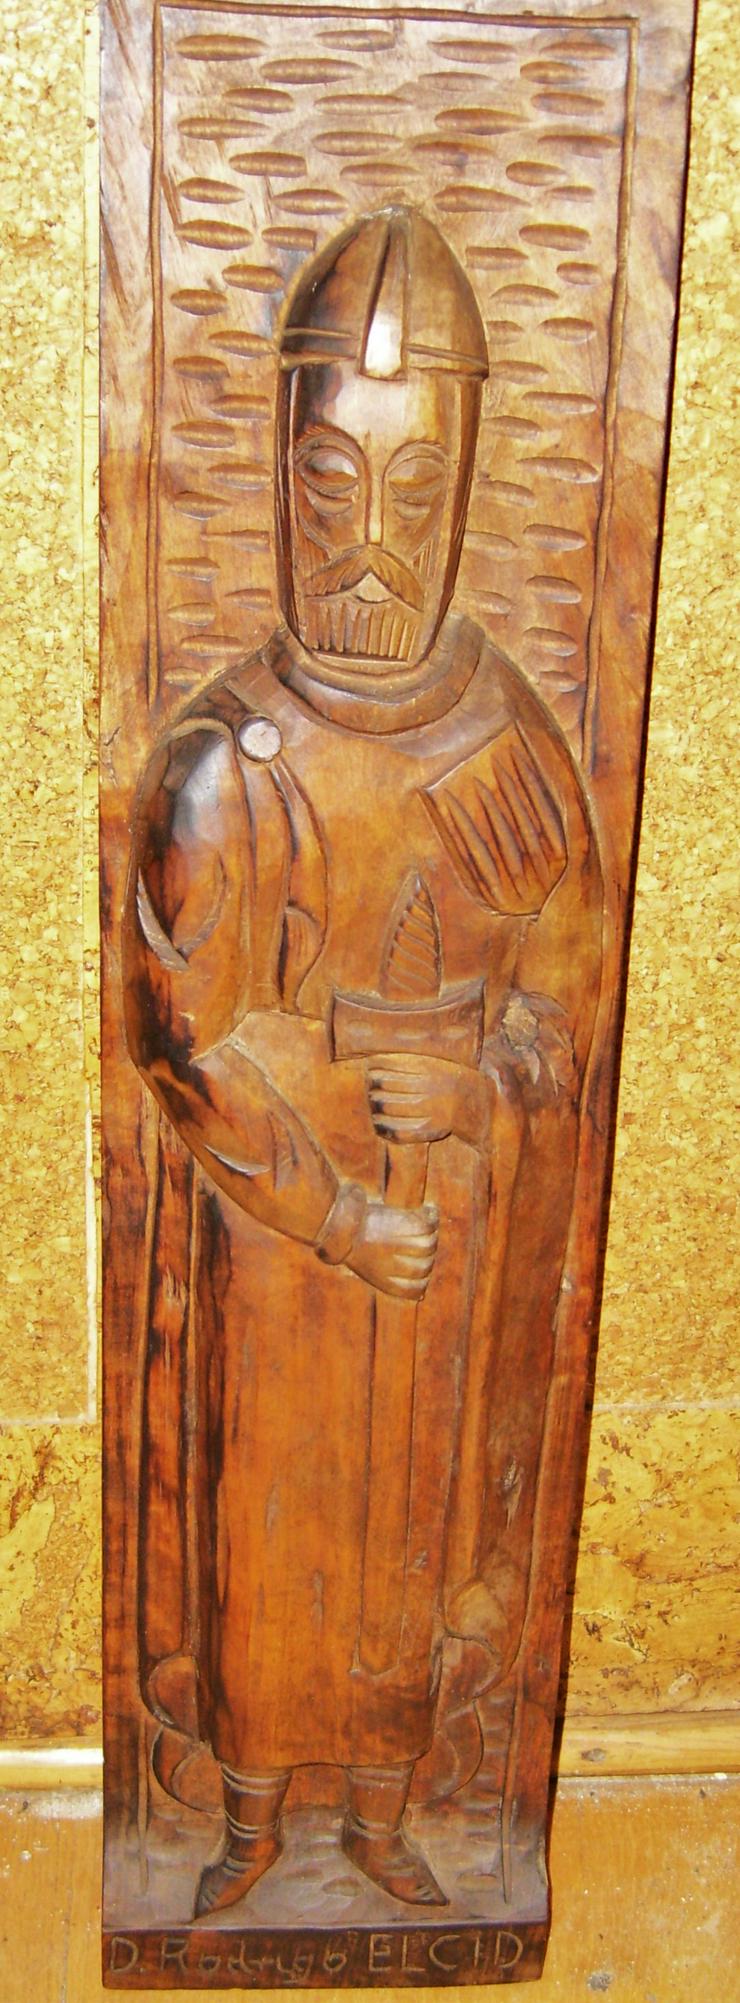 holz relief bild  El Cid - Figuren - Bild 1